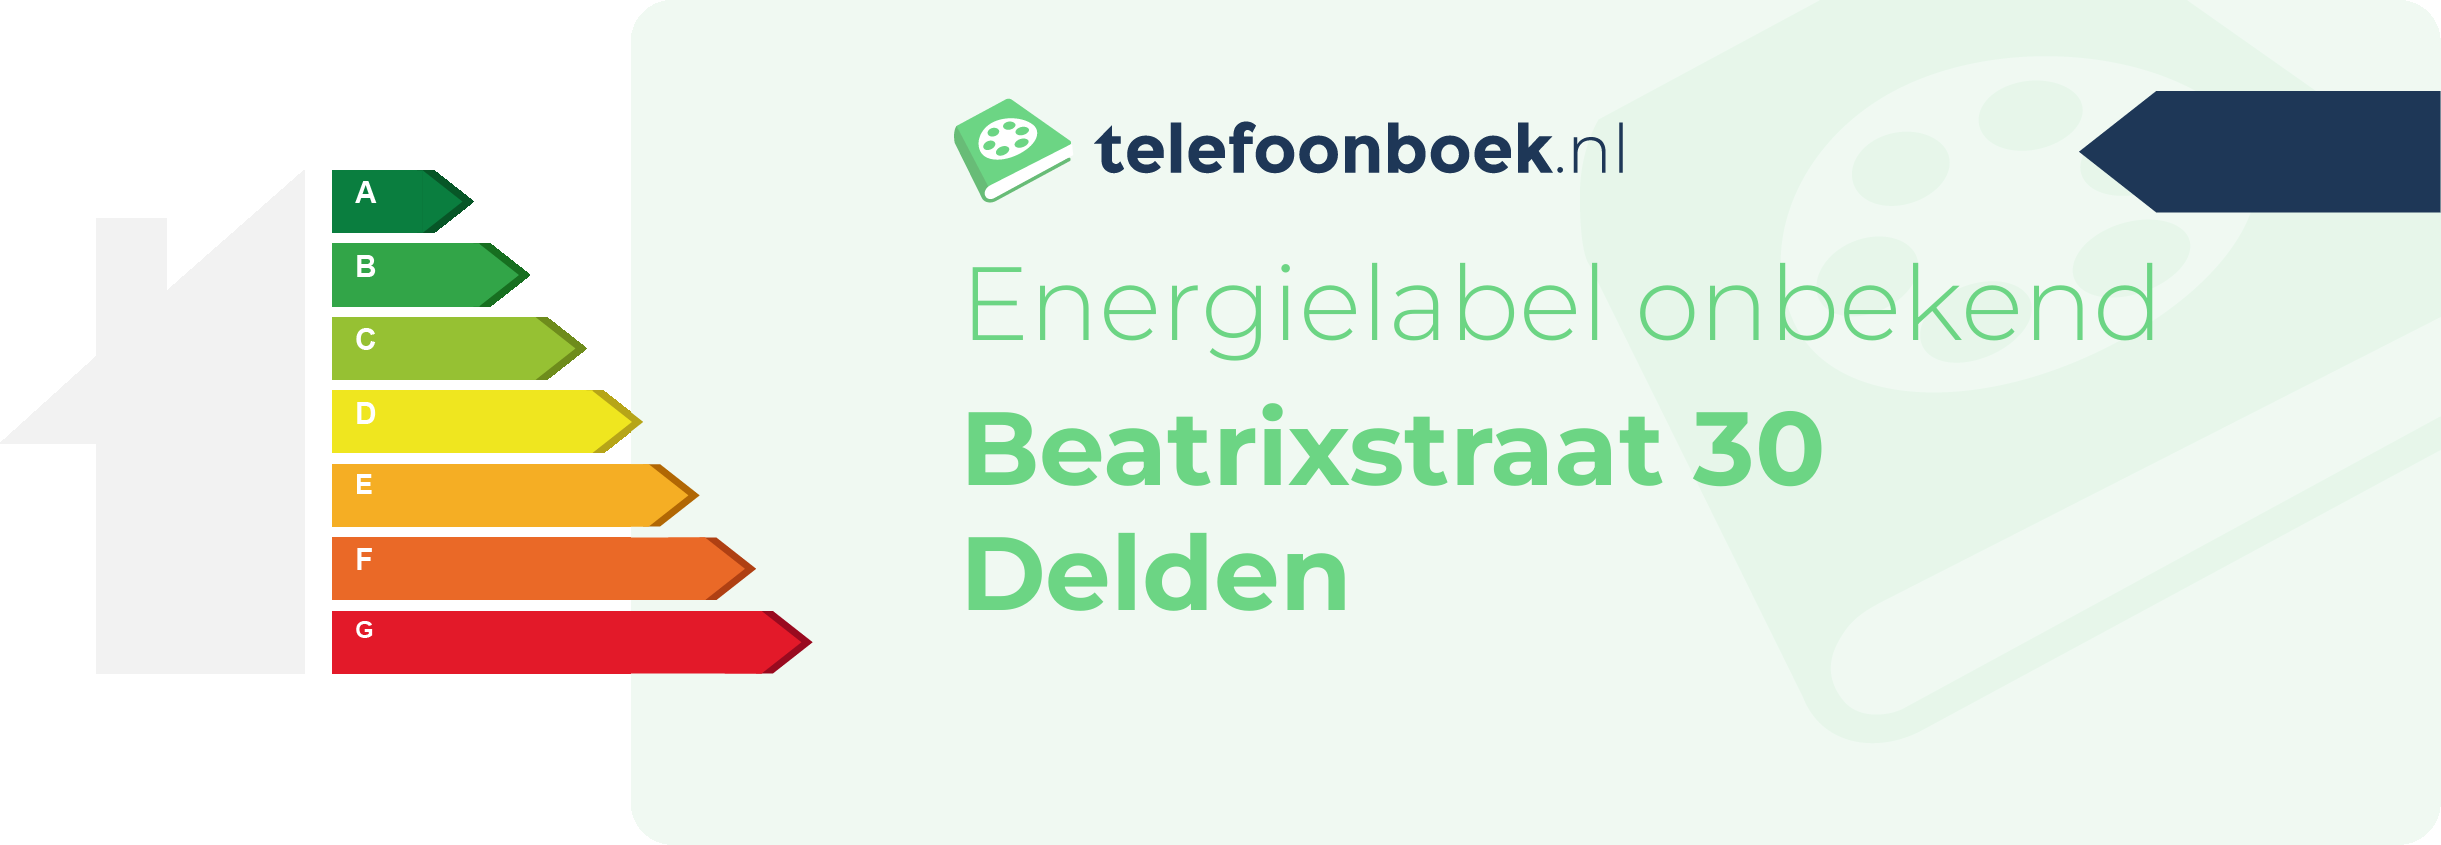 Energielabel Beatrixstraat 30 Delden